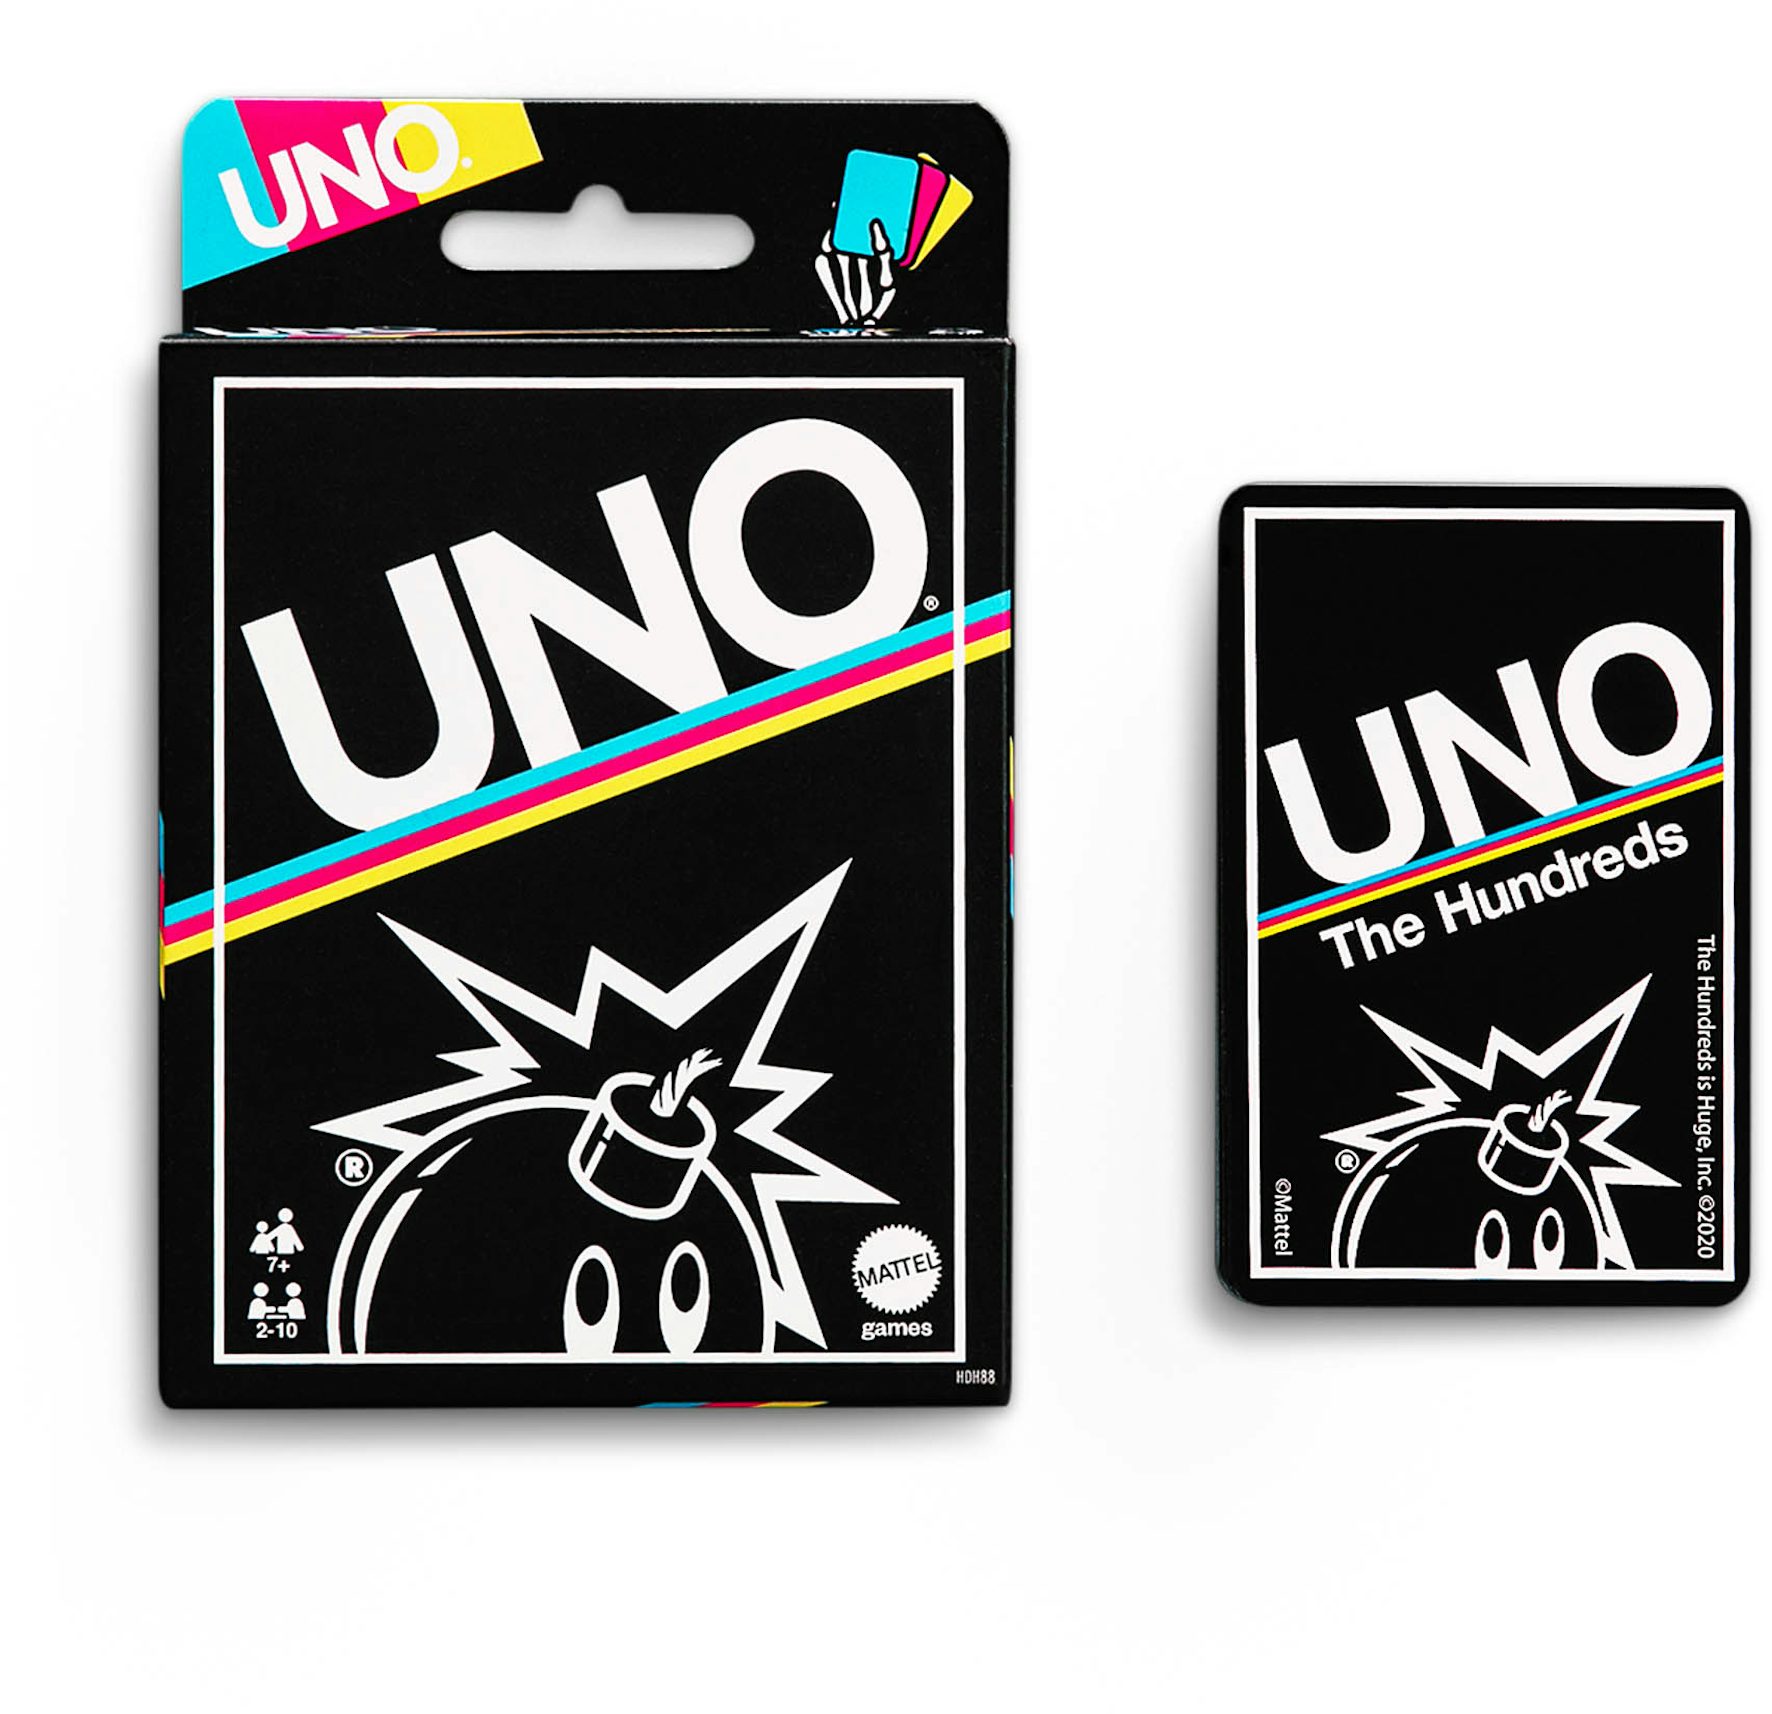 UNO - Each UNO Disney 100 deck comes with 1 of 16